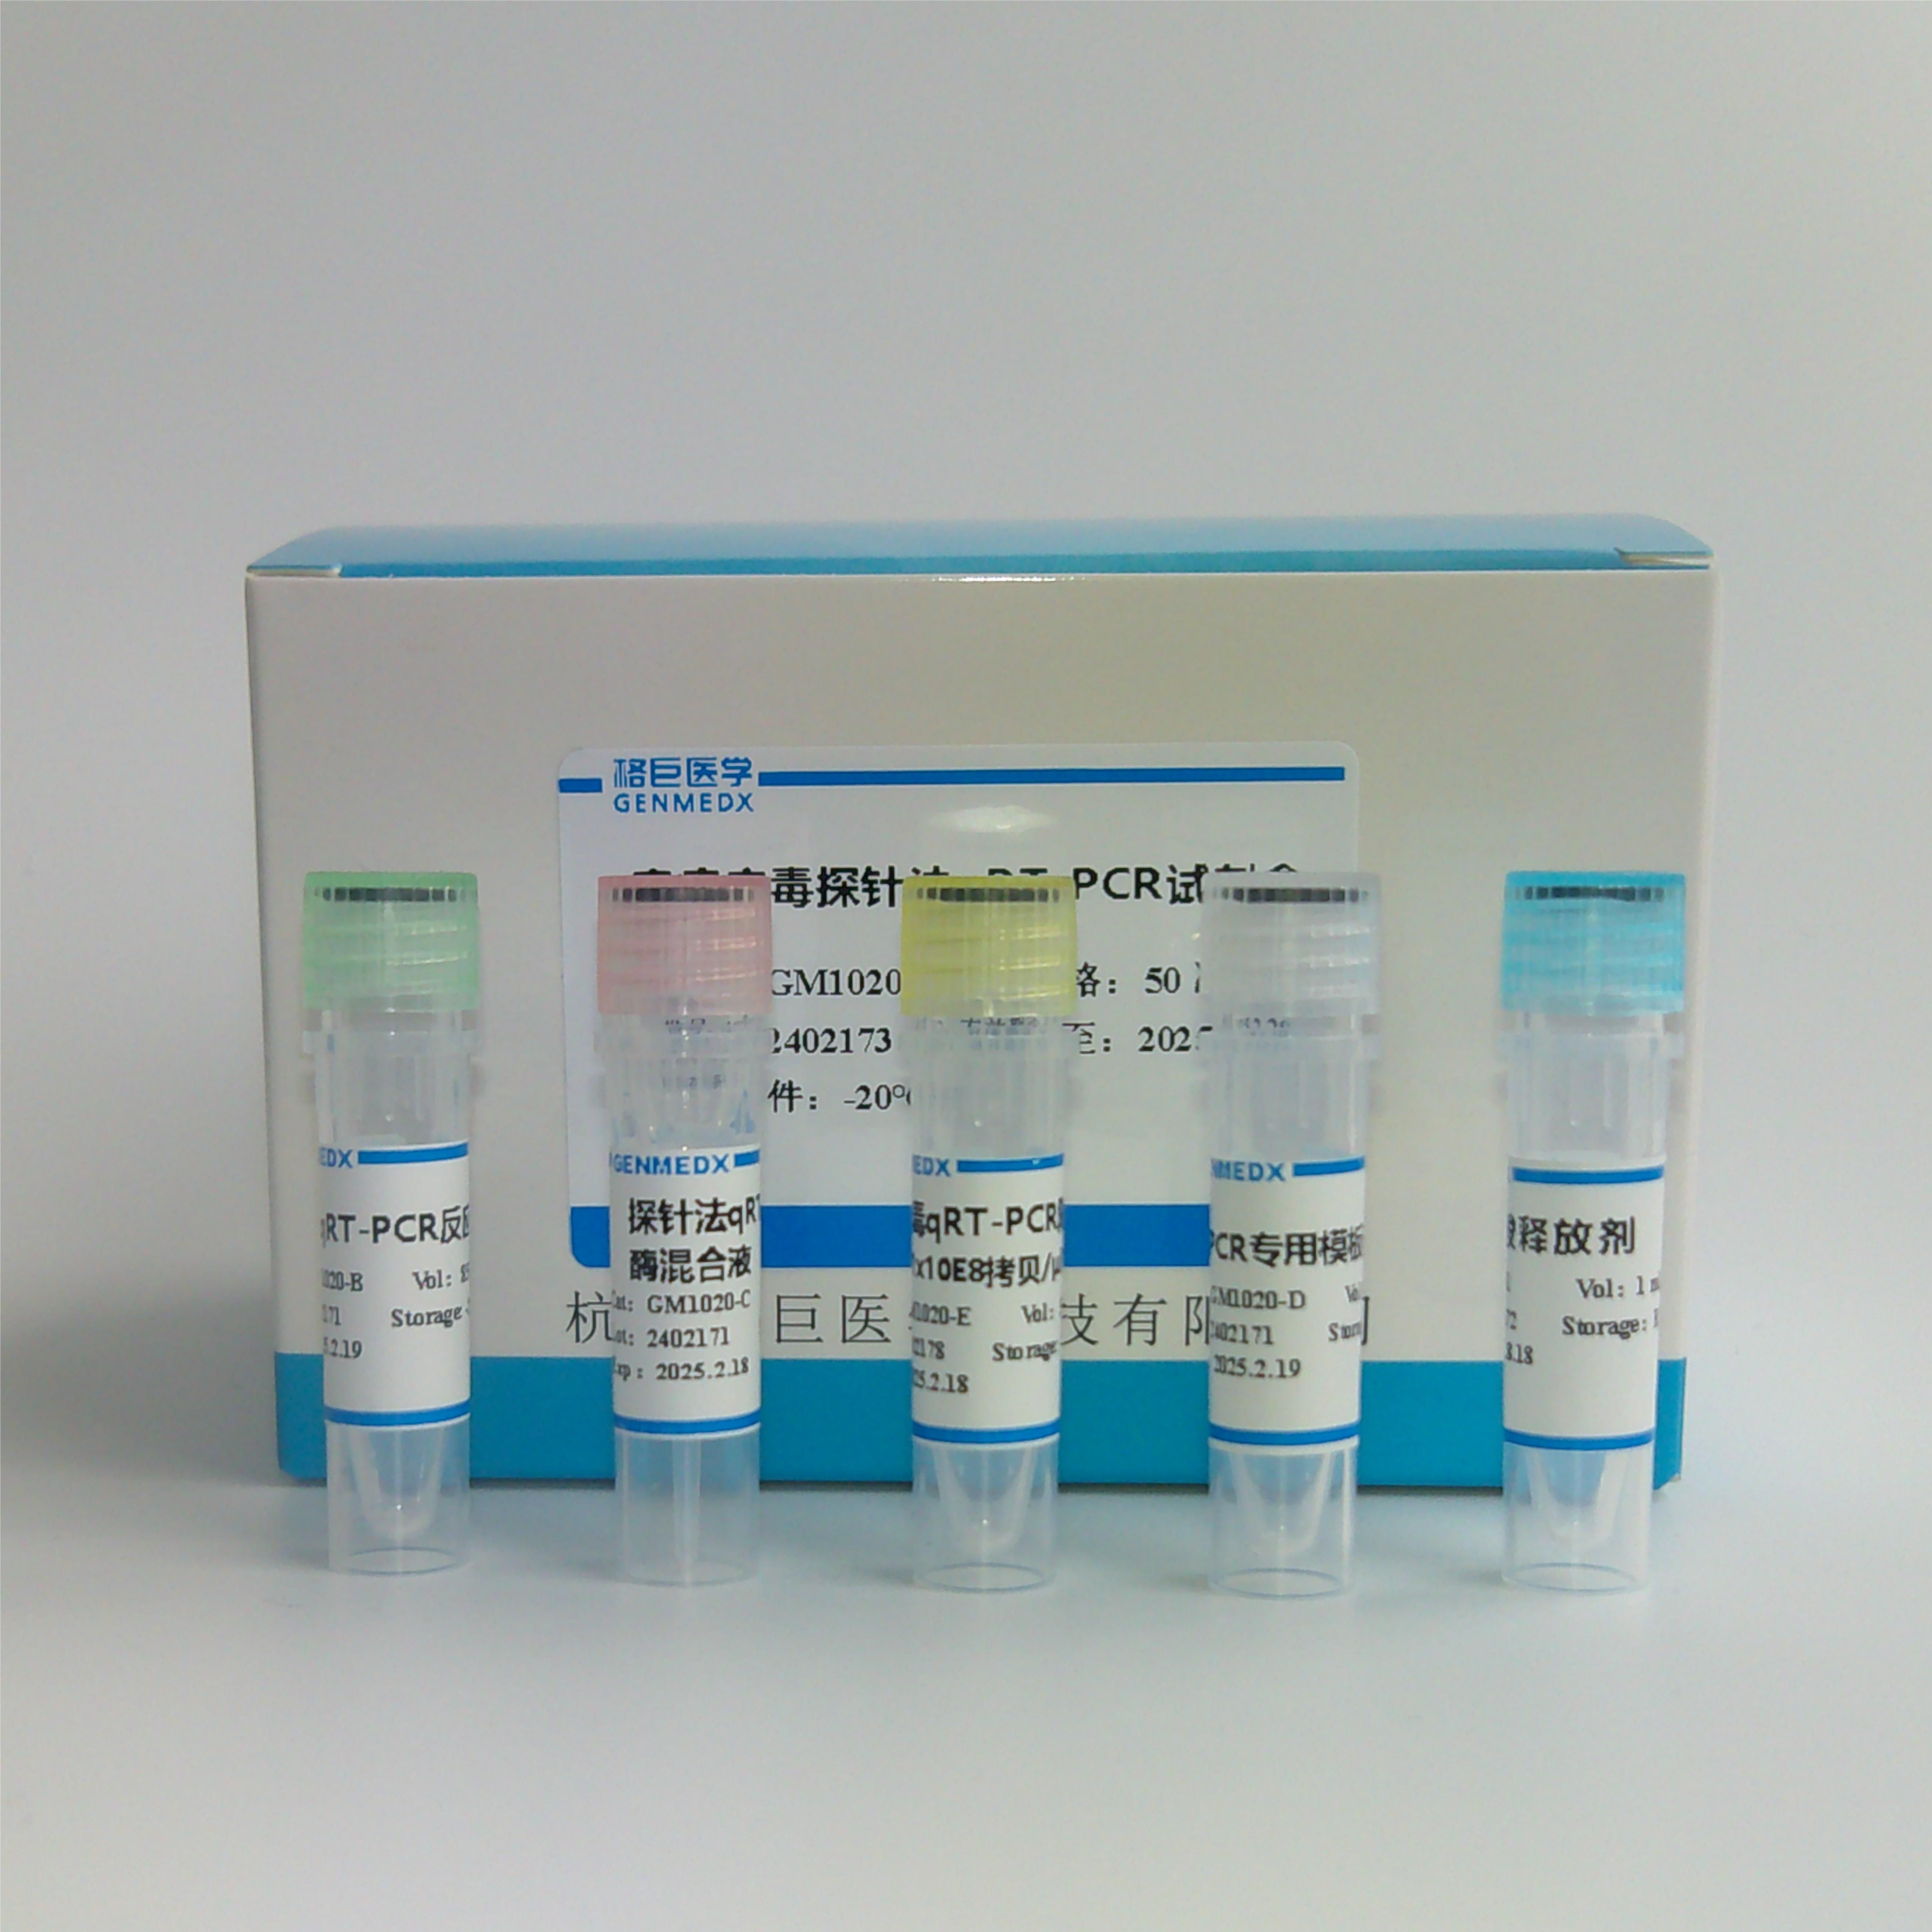 耳念珠菌(C.auris)染料法荧光定量PCR试剂盒